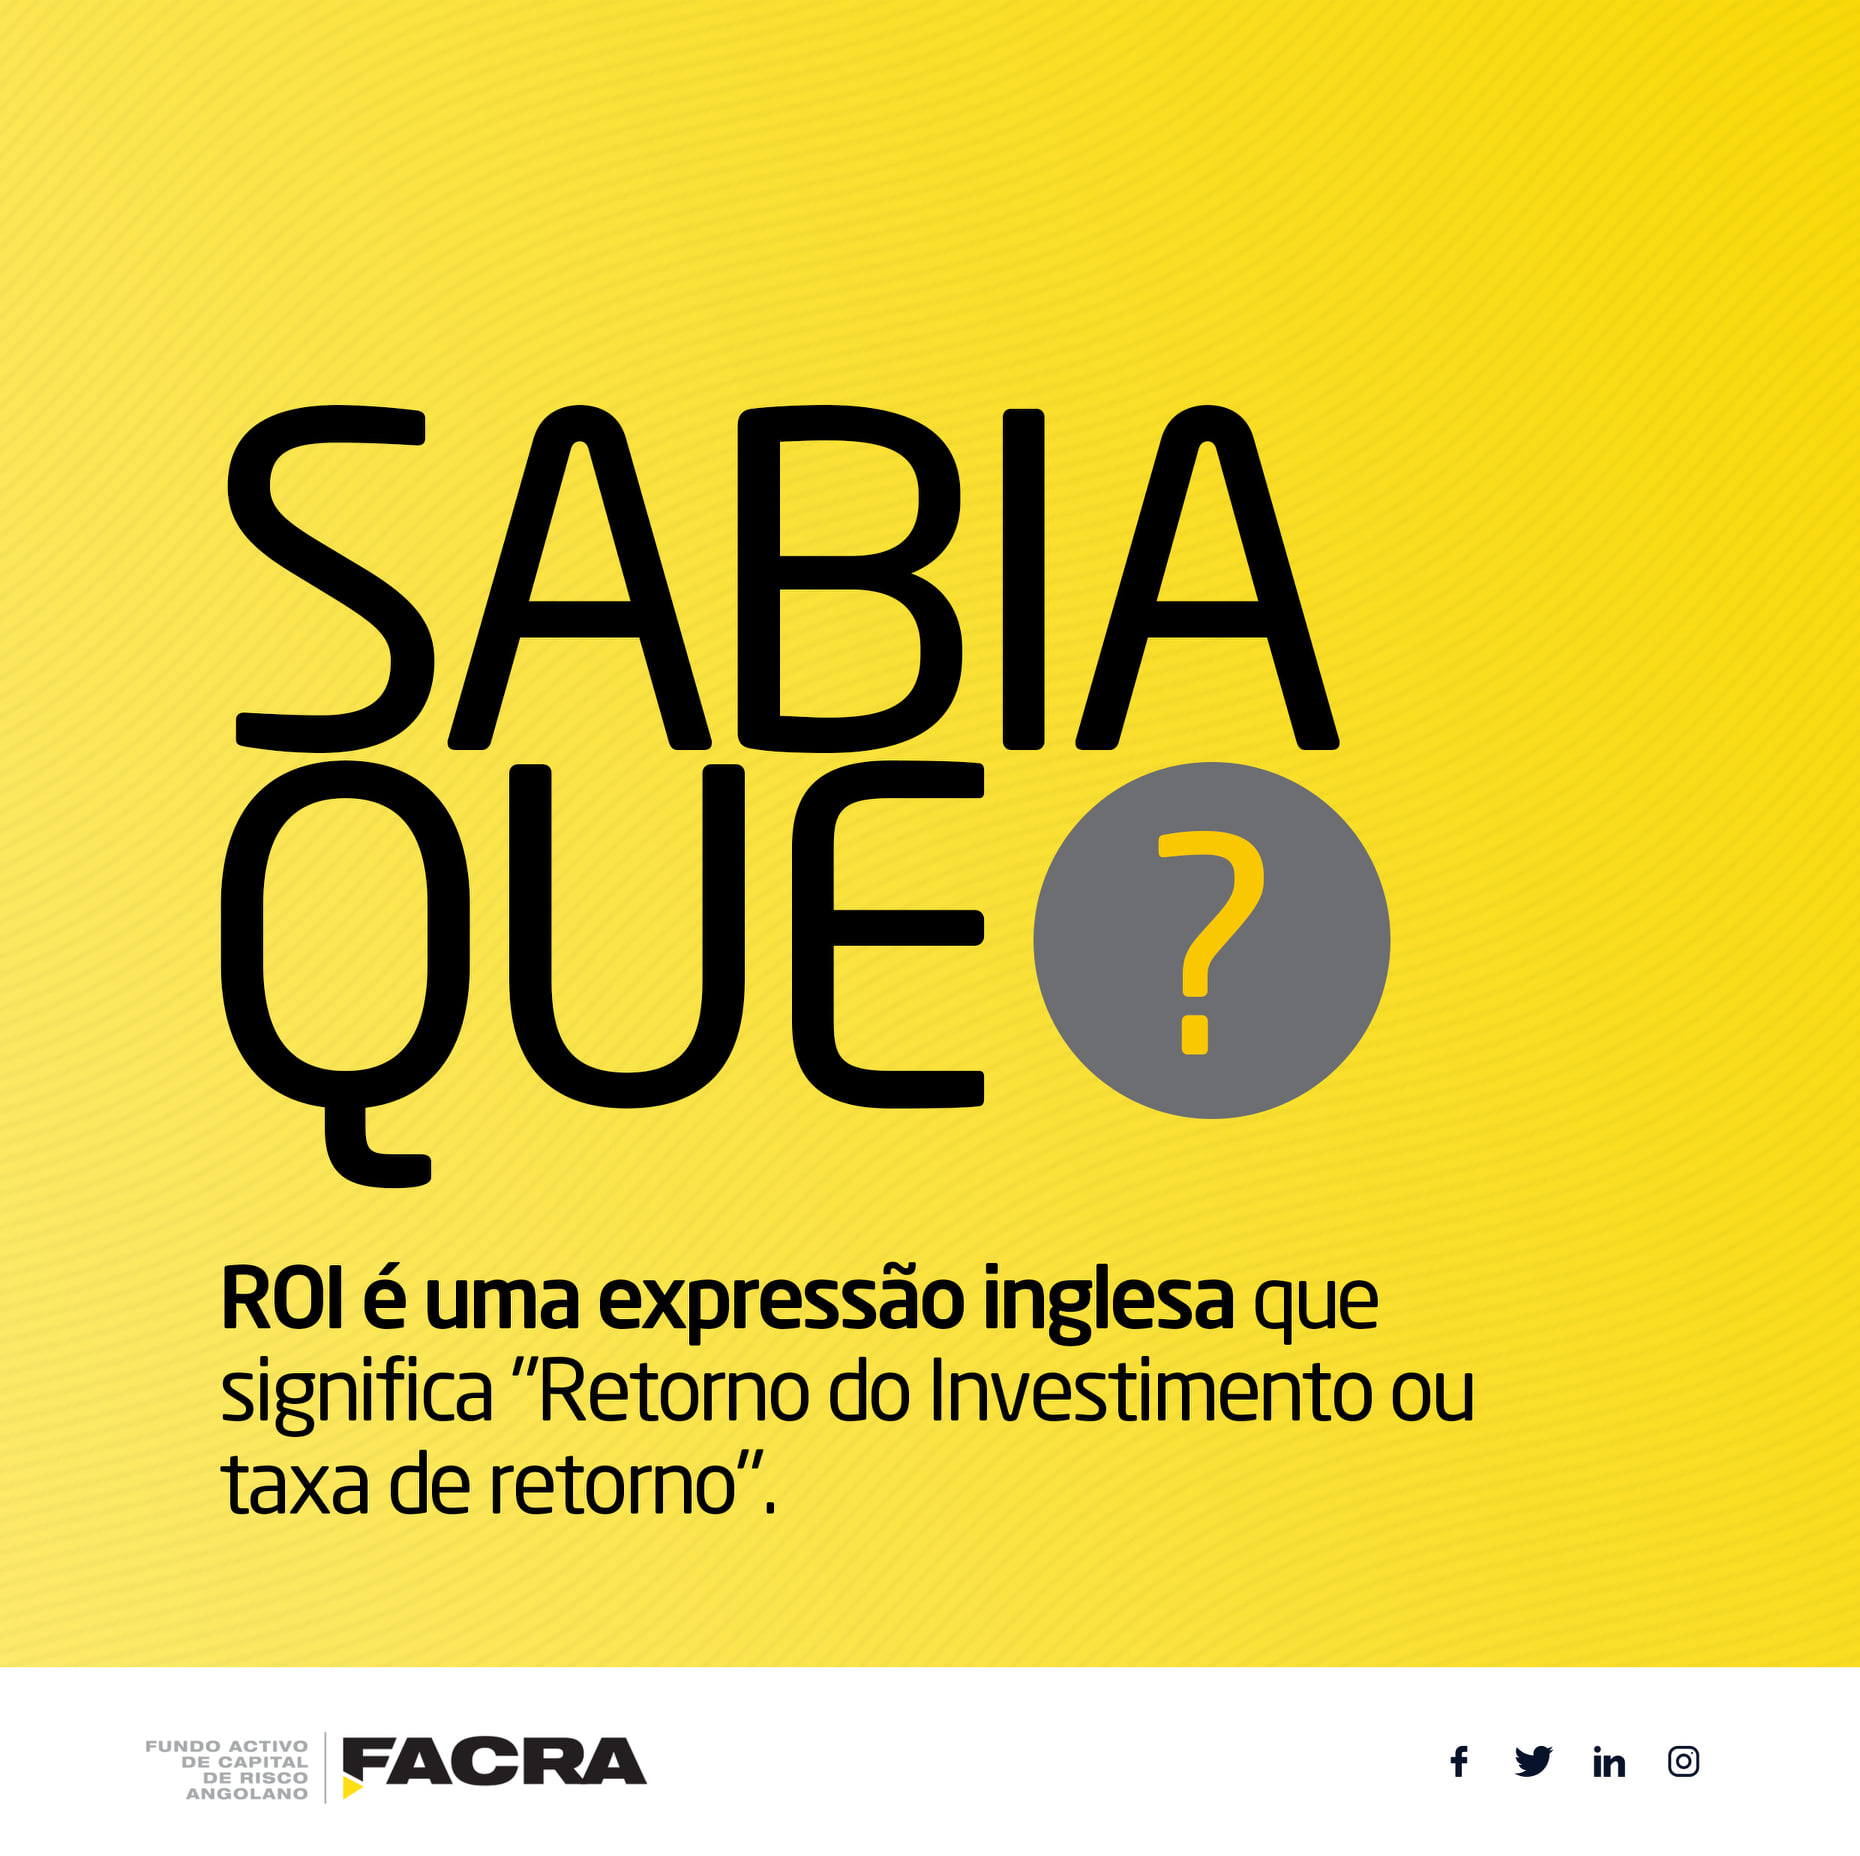 FACRA – Fundo Activo de Capital de Risco Angolano